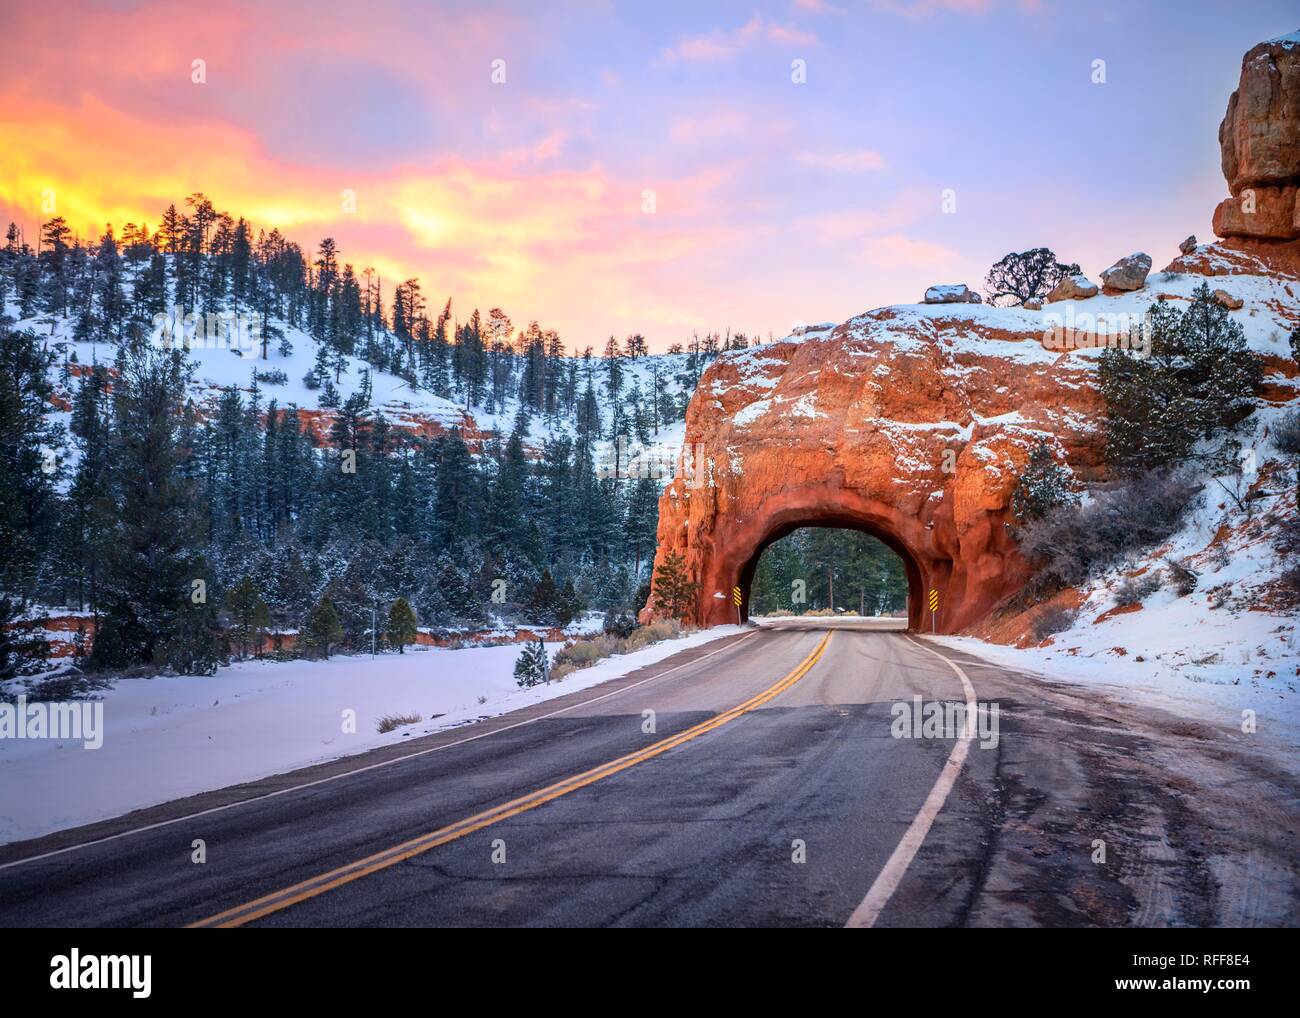 Route avec un tunnel à travers le red rock arch dans la neige, au coucher du soleil, l'autoroute 12, de rochers de grès, Red Canyon, Panguitch, Utah, USA Banque D'Images